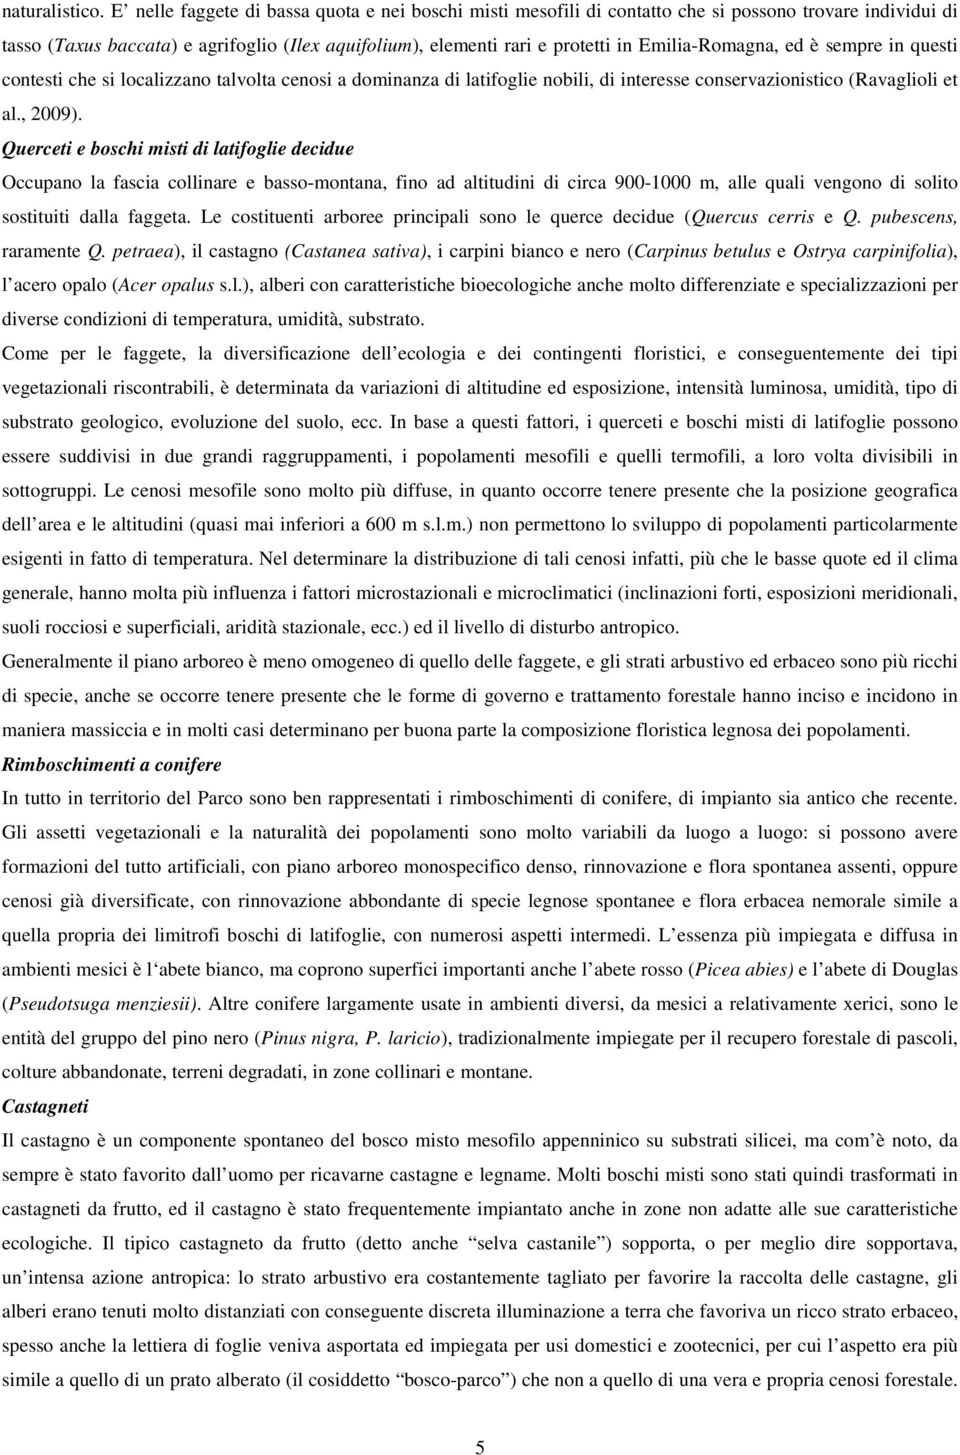 Emilia-Romagna, ed è sempre in questi contesti che si localizzano talvolta cenosi a dominanza di latifoglie nobili, di interesse conservazionistico (Ravaglioli et al., 2009).